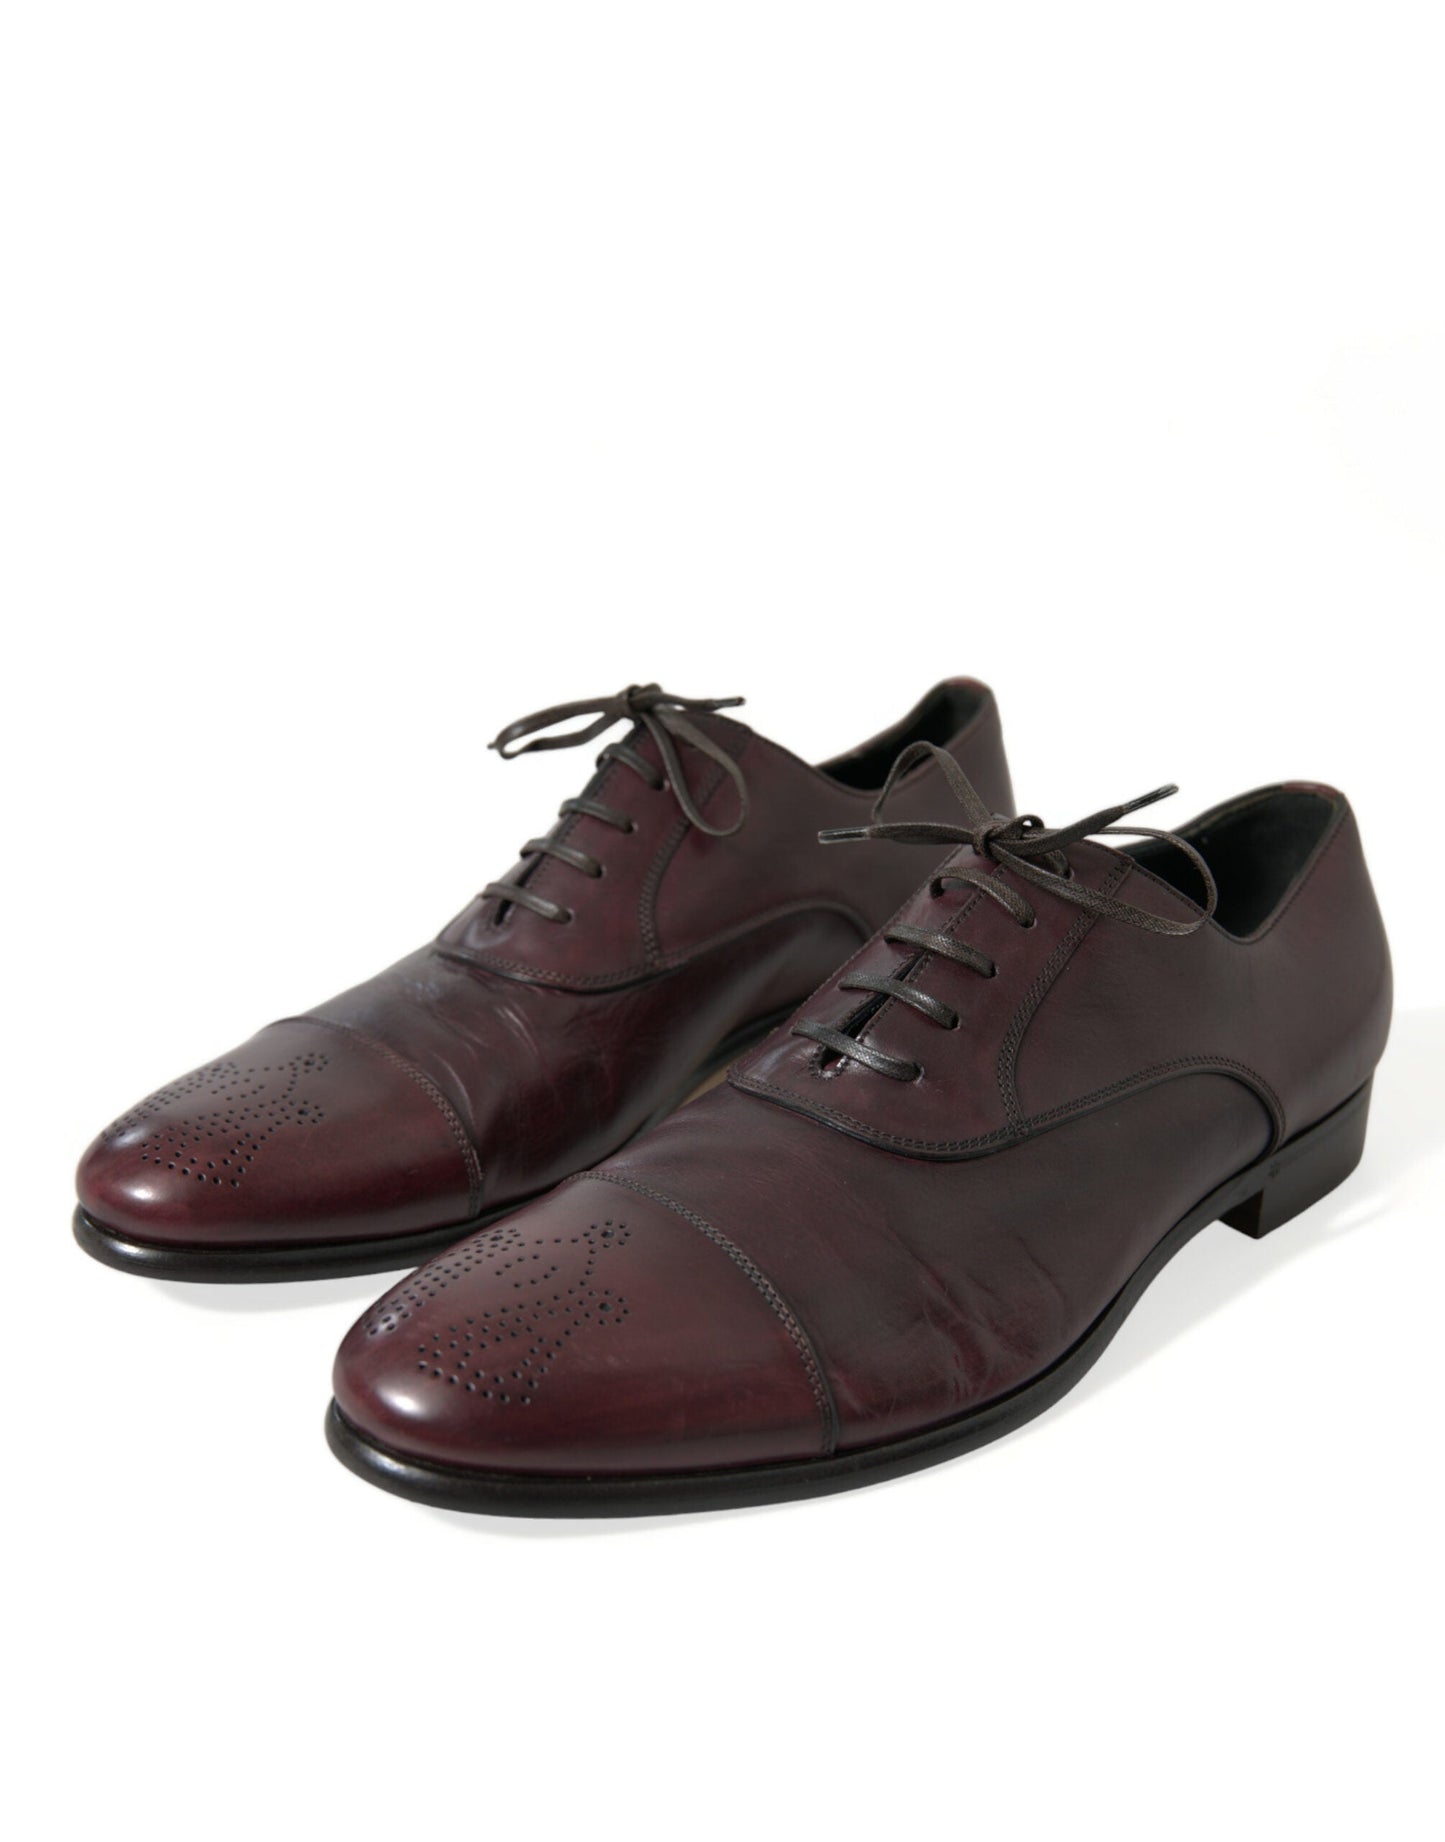 Dolce & Gabbana Bordeaux Leather Men Formal Derby Dress Shoes | Fashionsarah.com